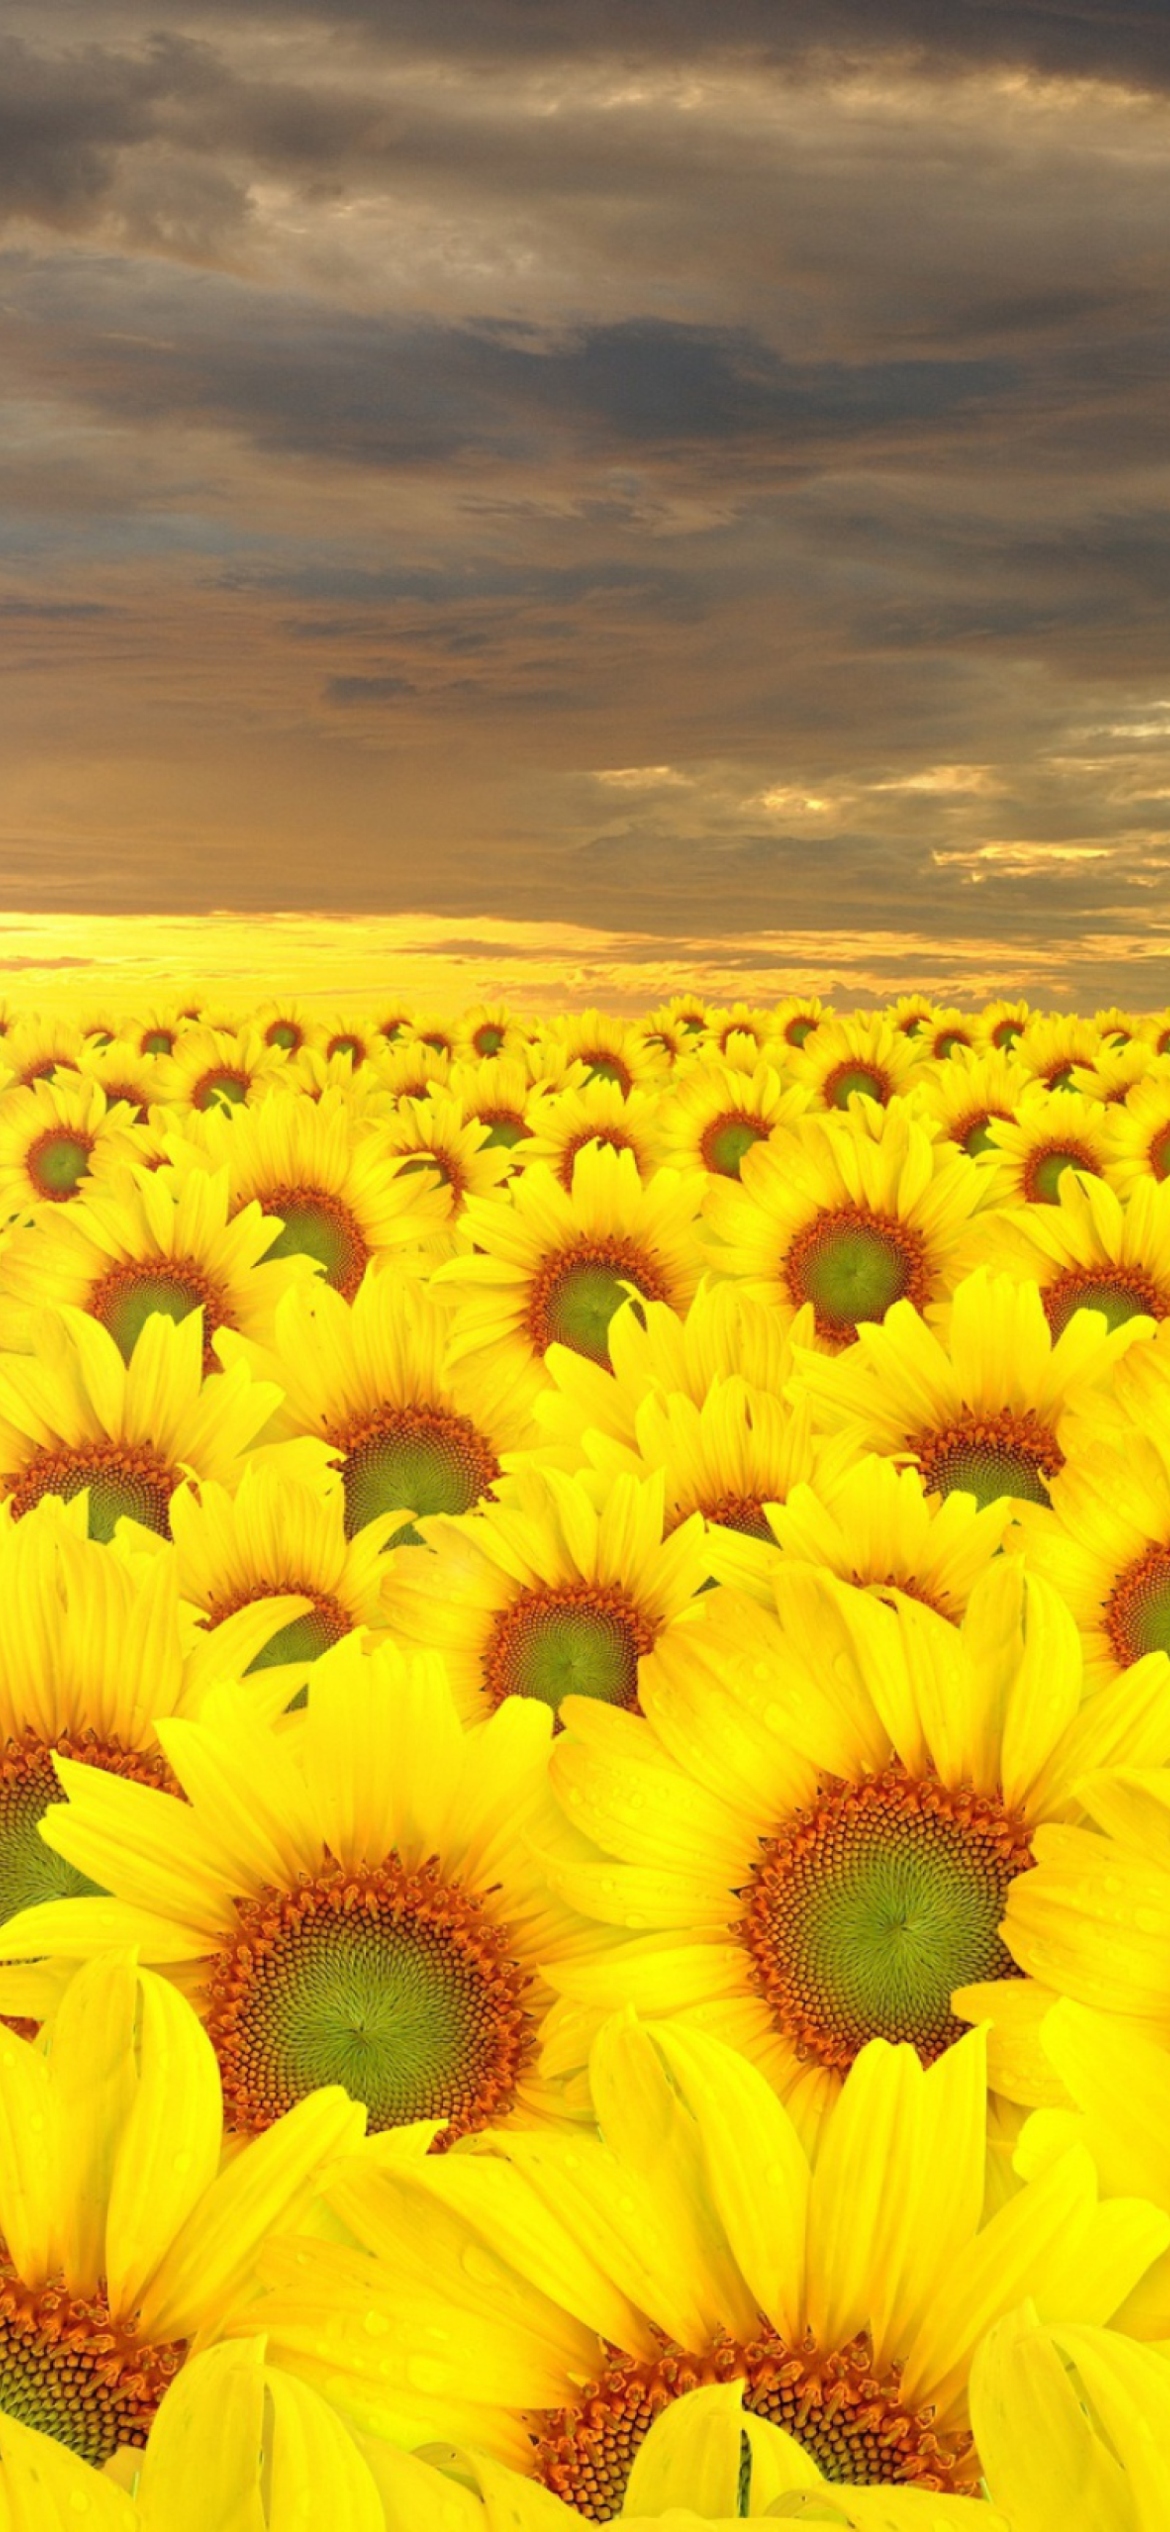 Sunflower Field wallpaper 1170x2532